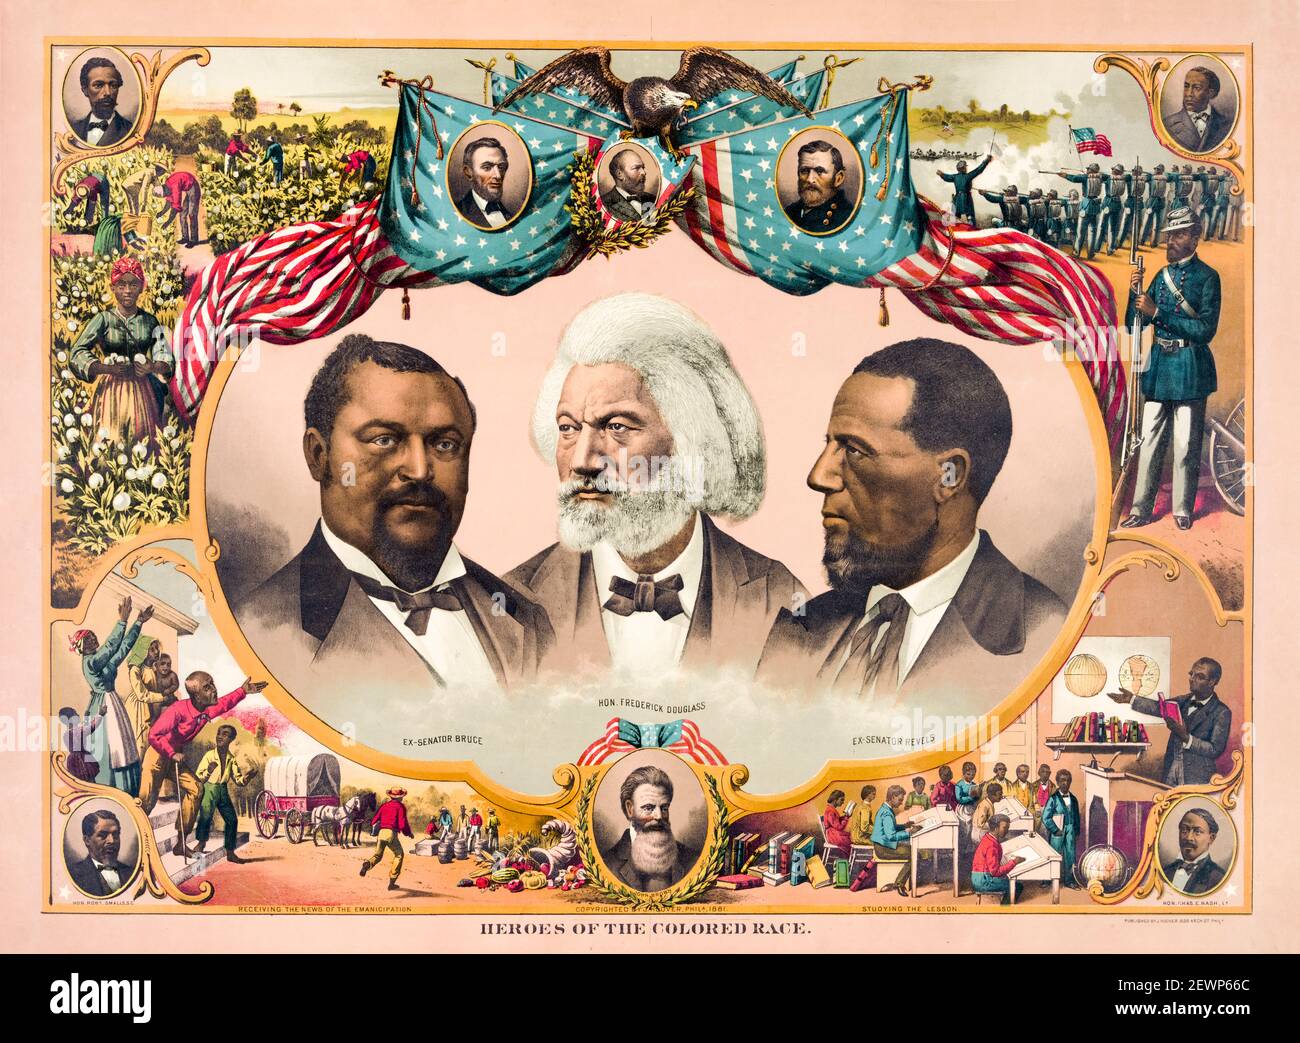 Héroes de la raza coloreada: Conmemora el avance del movimiento afroamericano por los derechos civiles del siglo 19th, póster de Joseph Hoover, 1881 Foto de stock